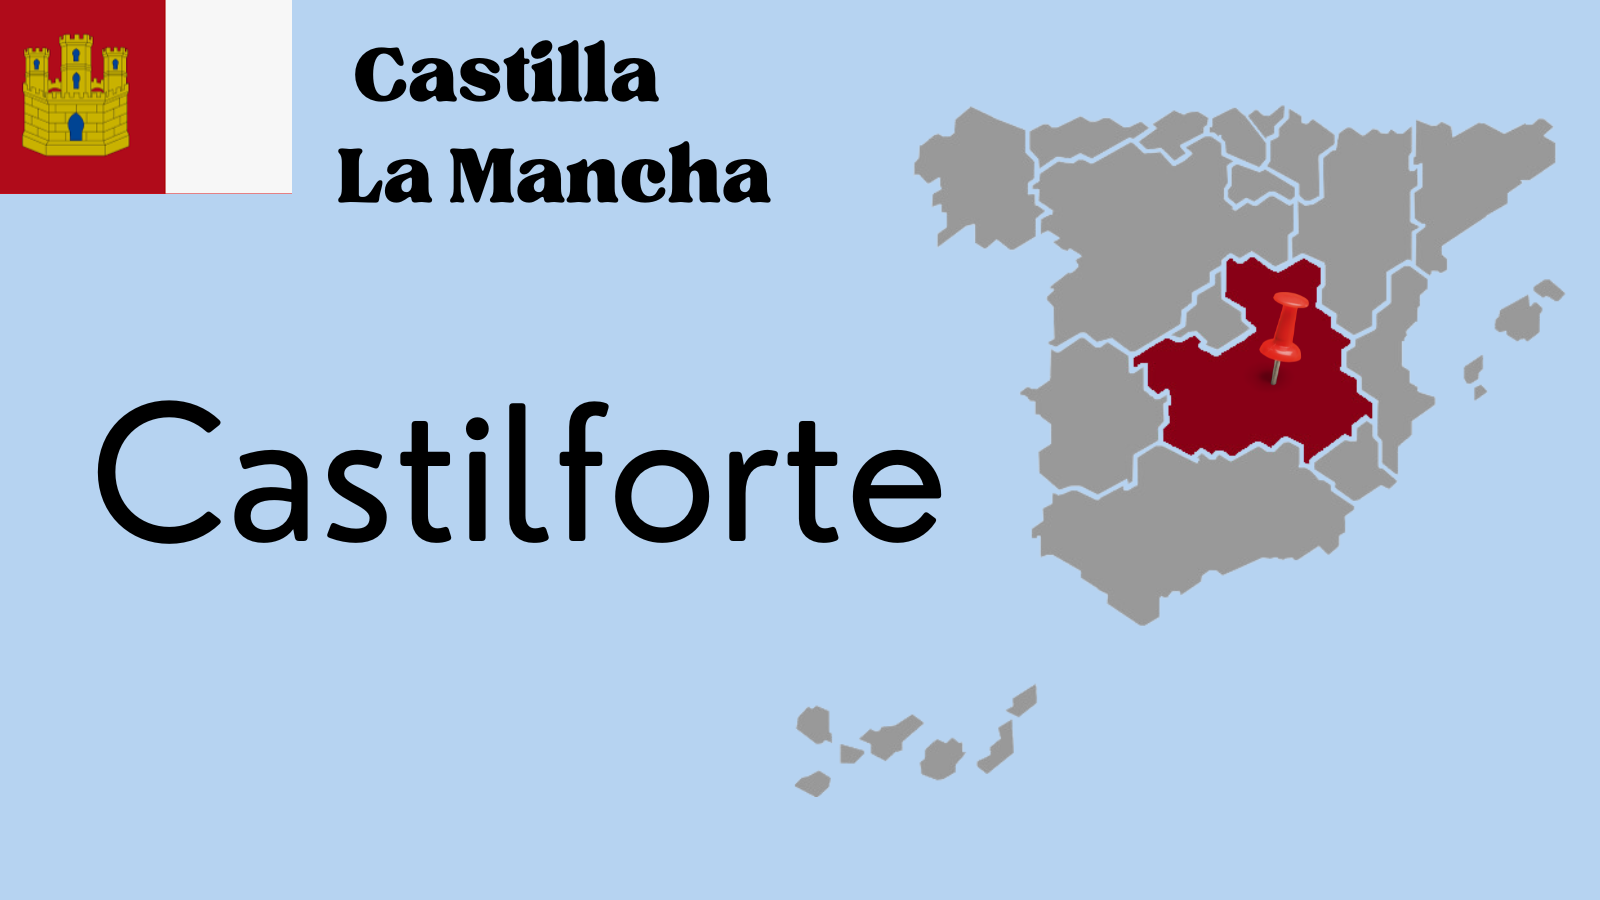 Castilforte